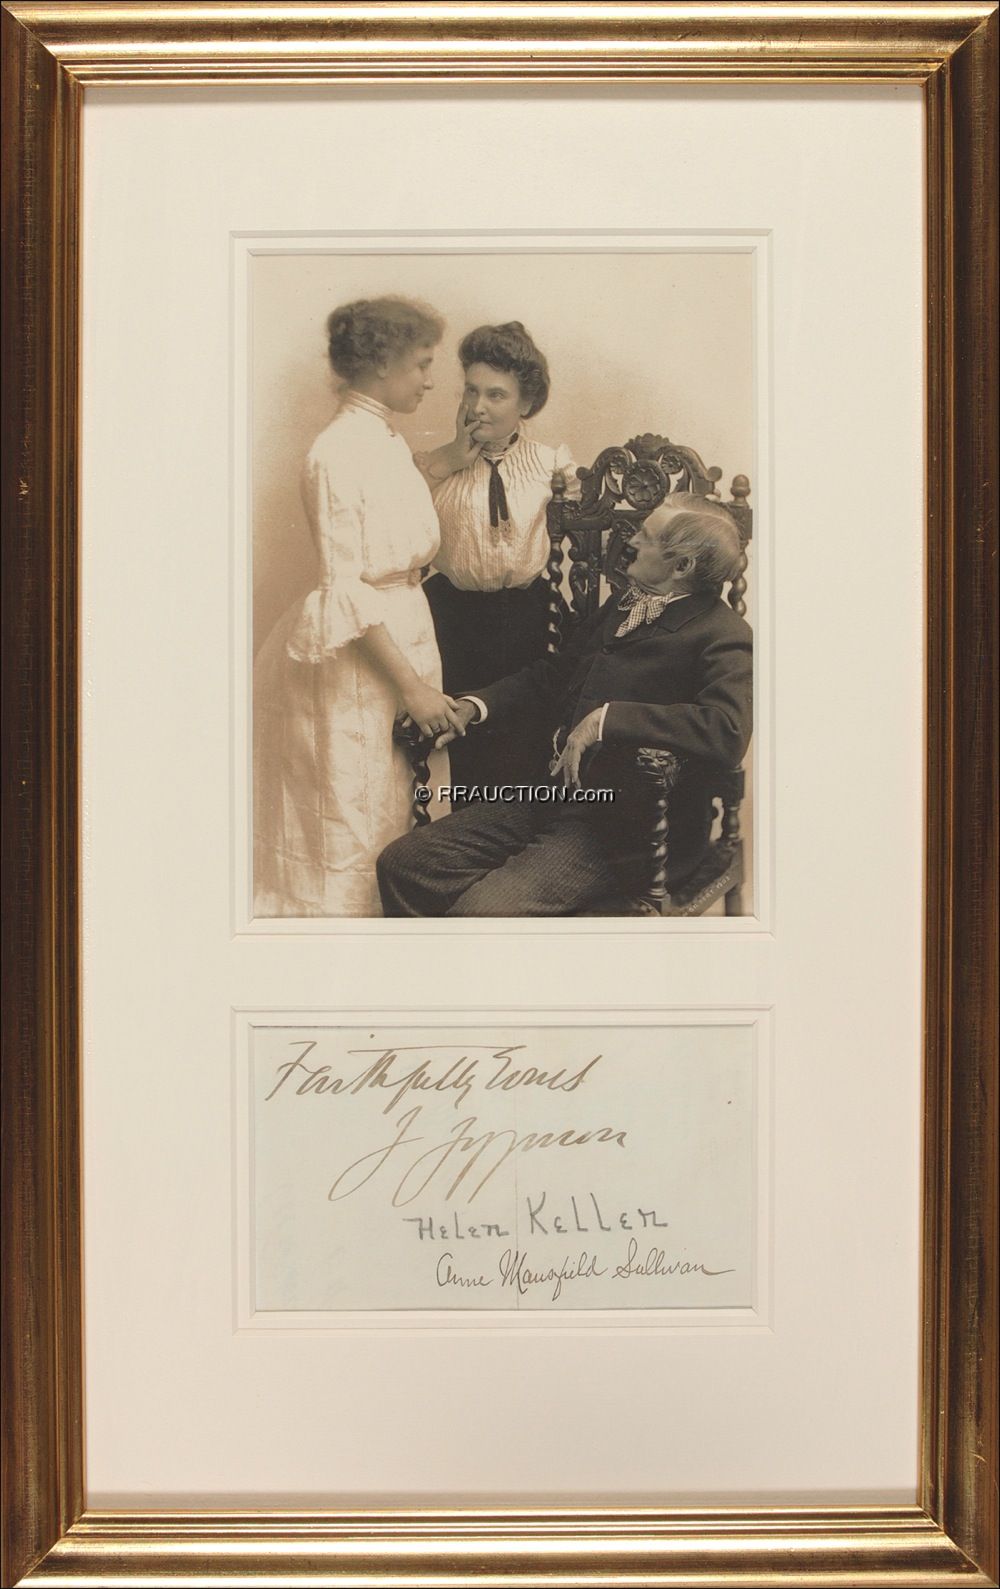 Lot #312 Helen Keller and Anne Sullivan